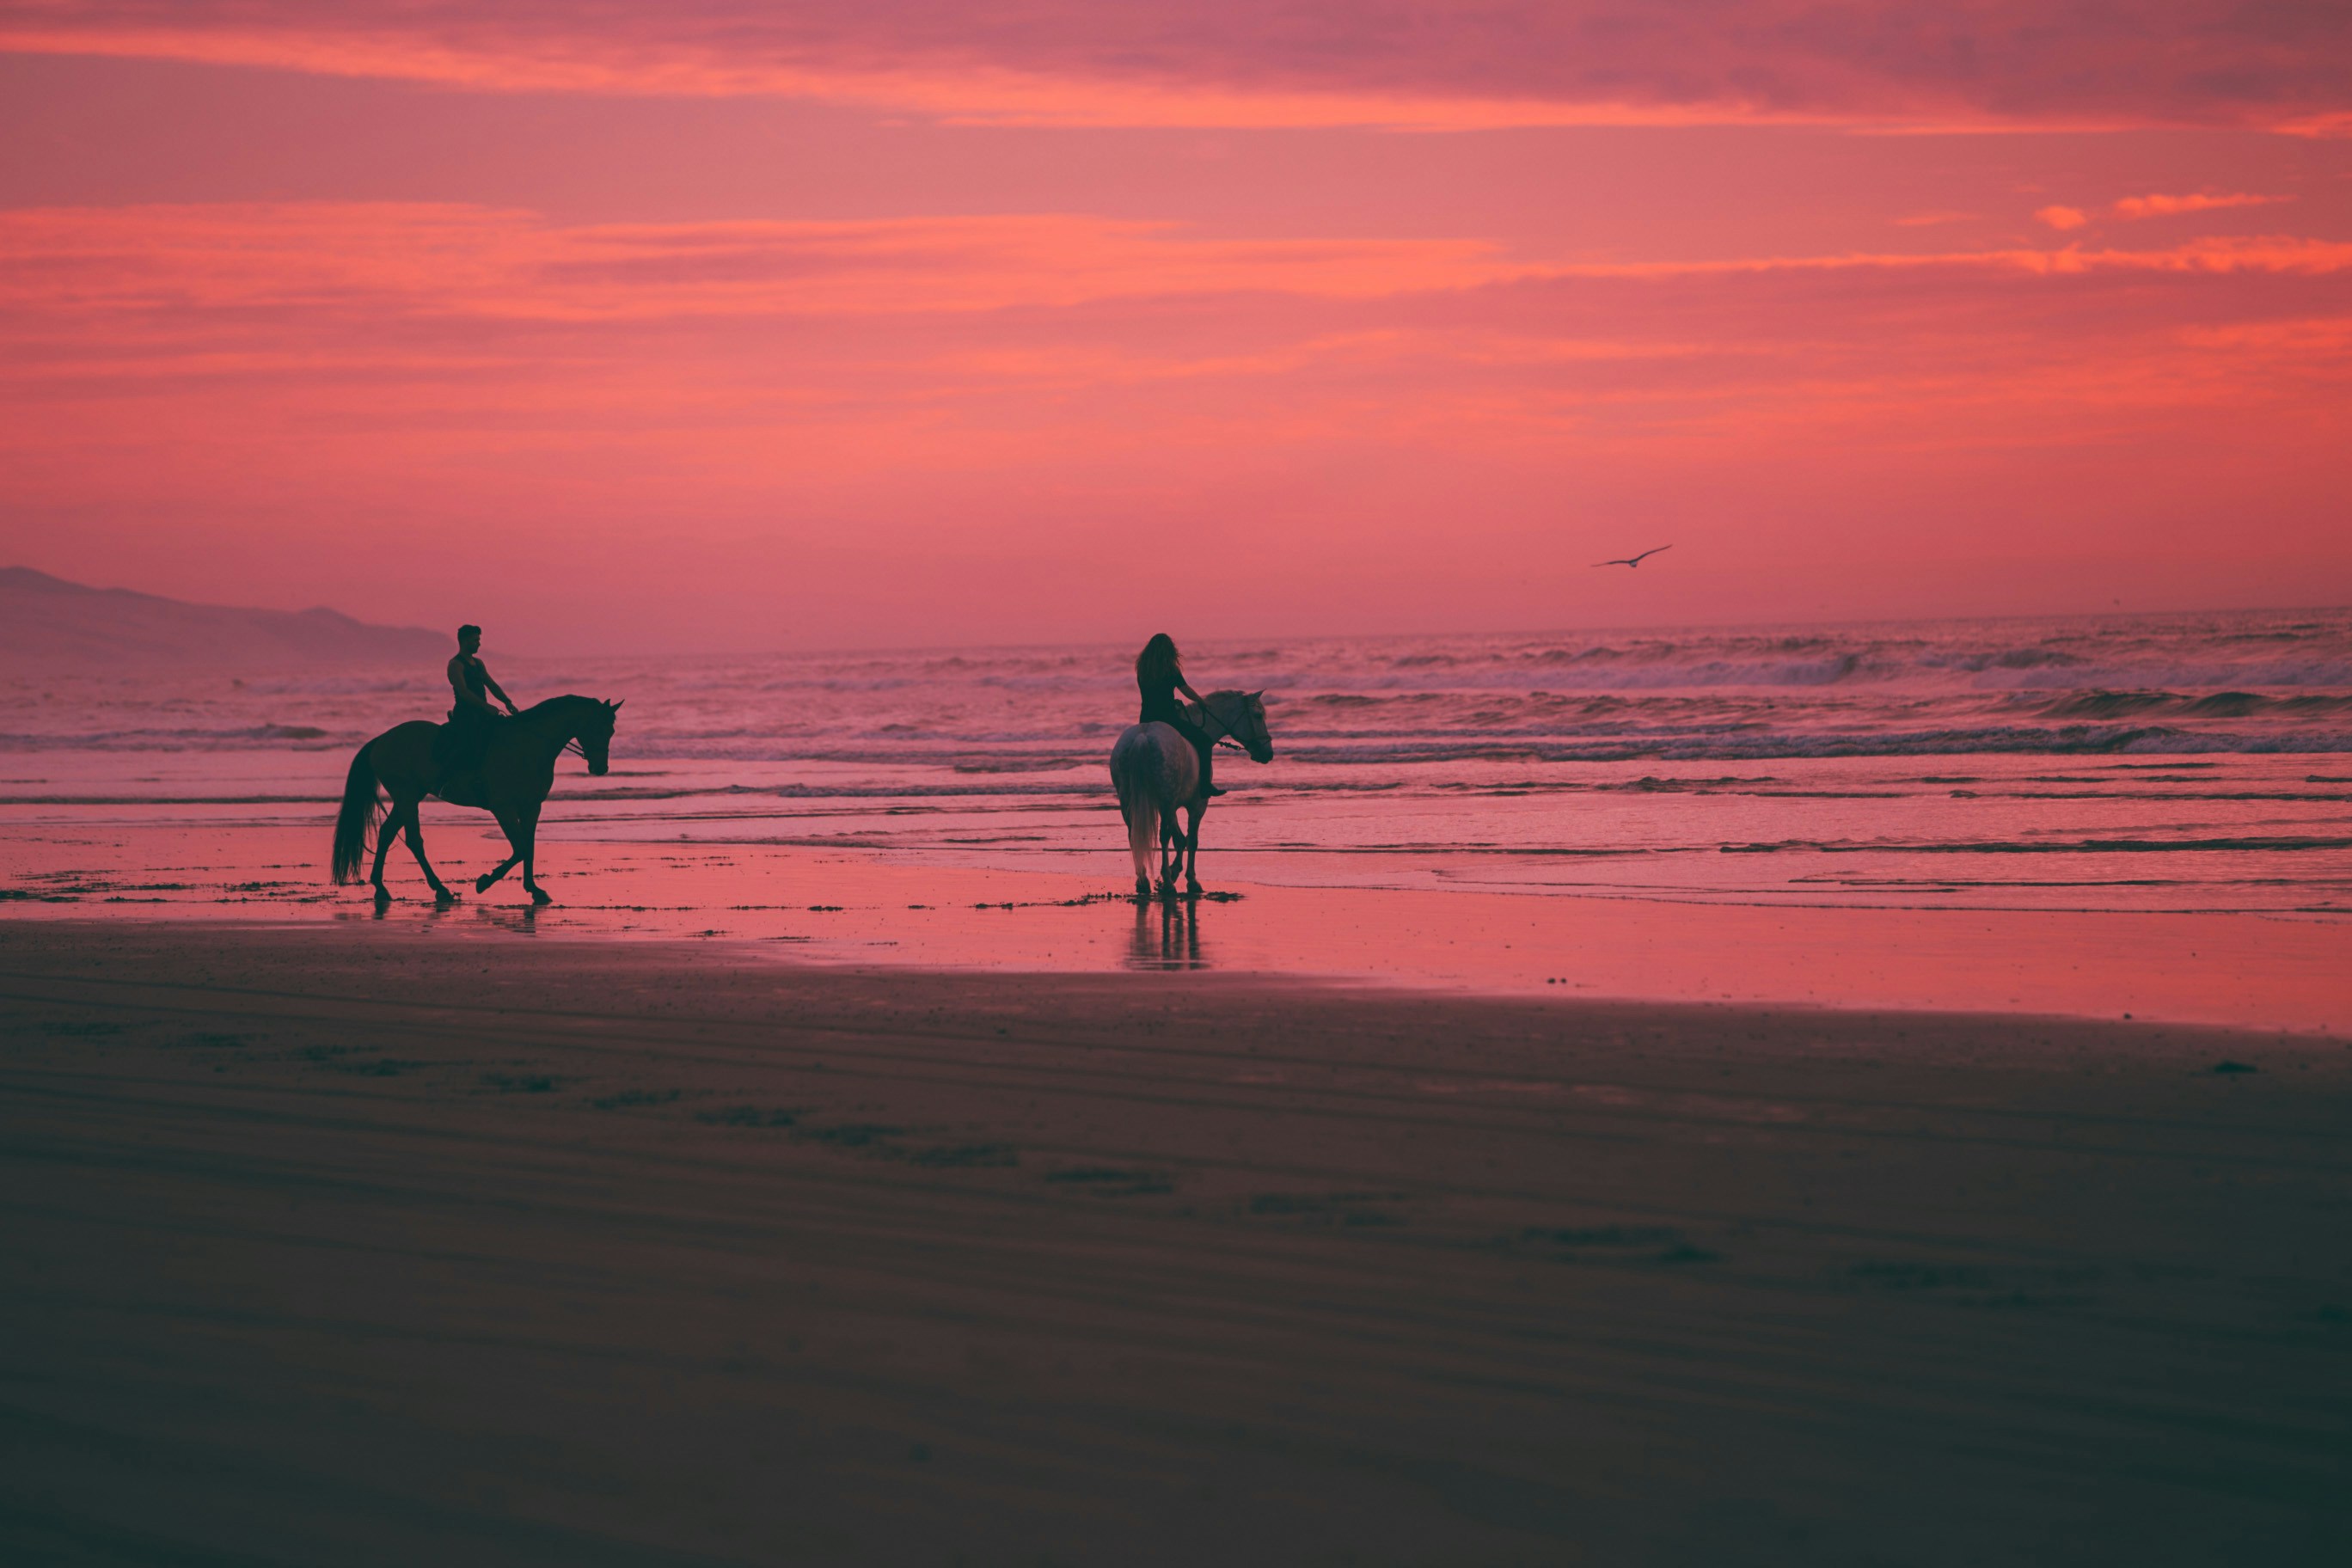 Sunset on horseback